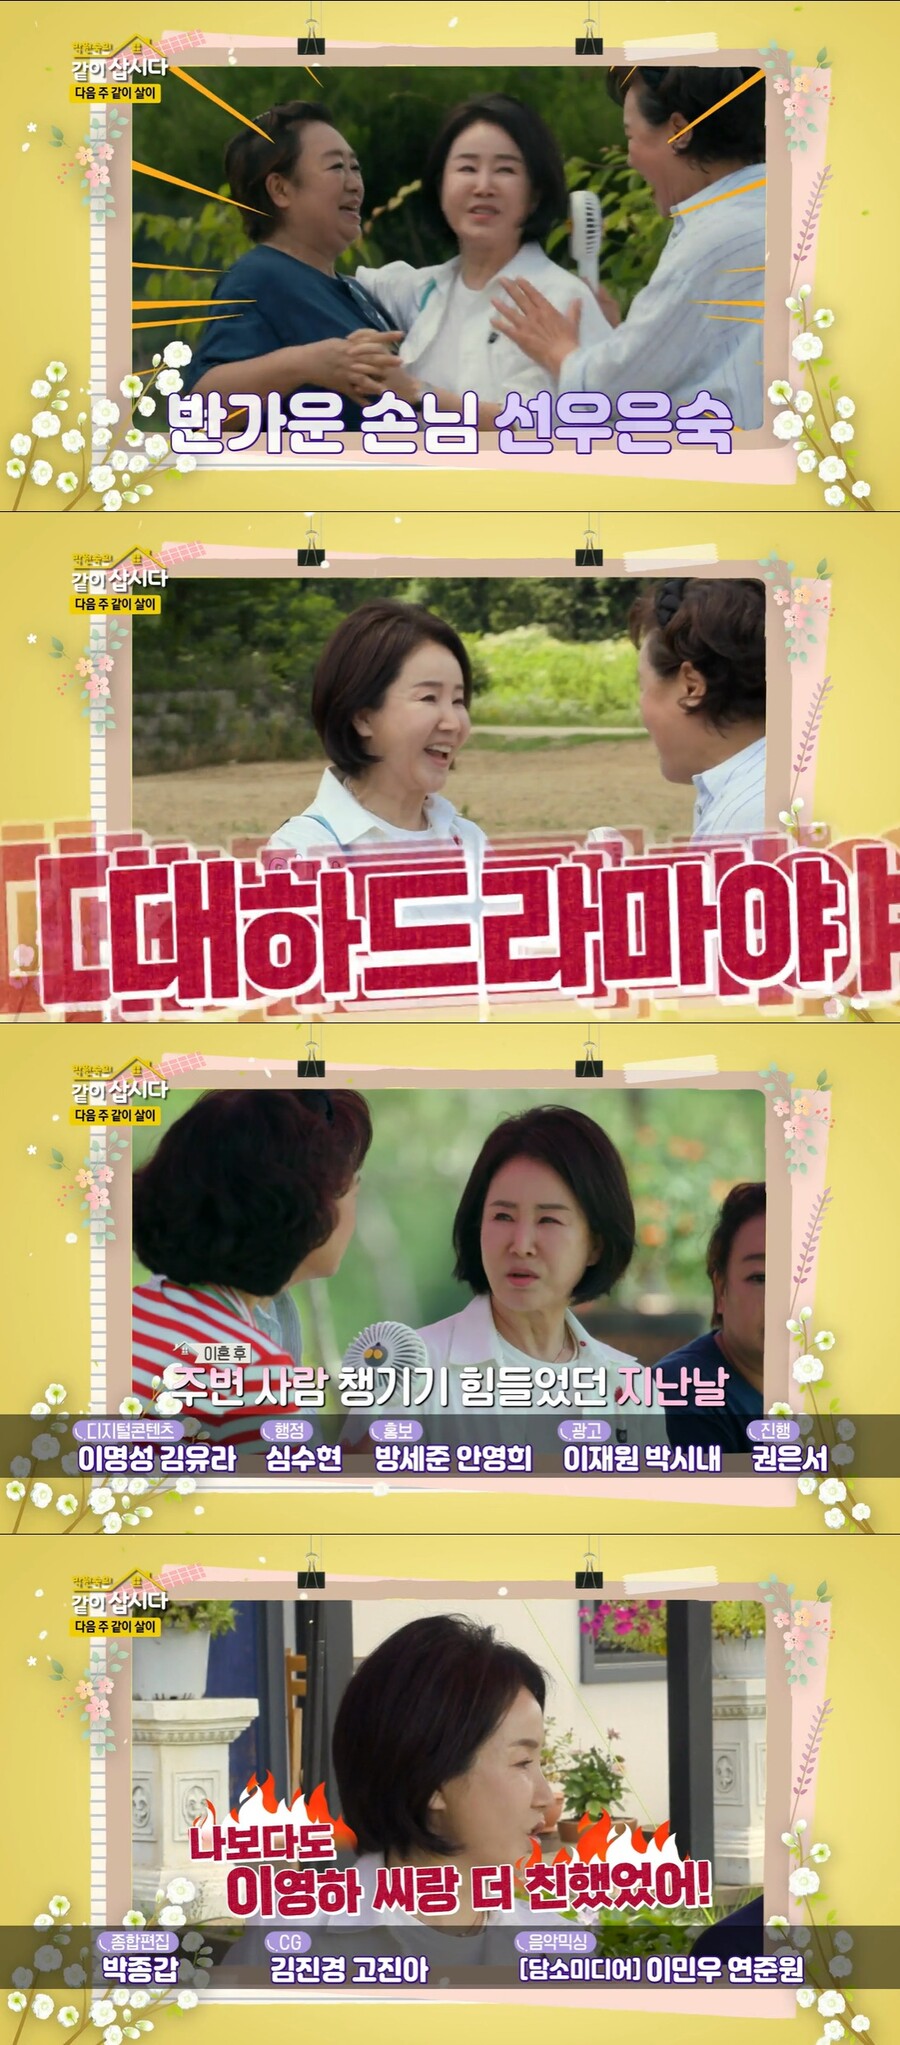 ▲ KBS2 예능프로그램 '박원숙의 같이 삽시다' 배우 선우은숙. 출처| KBS